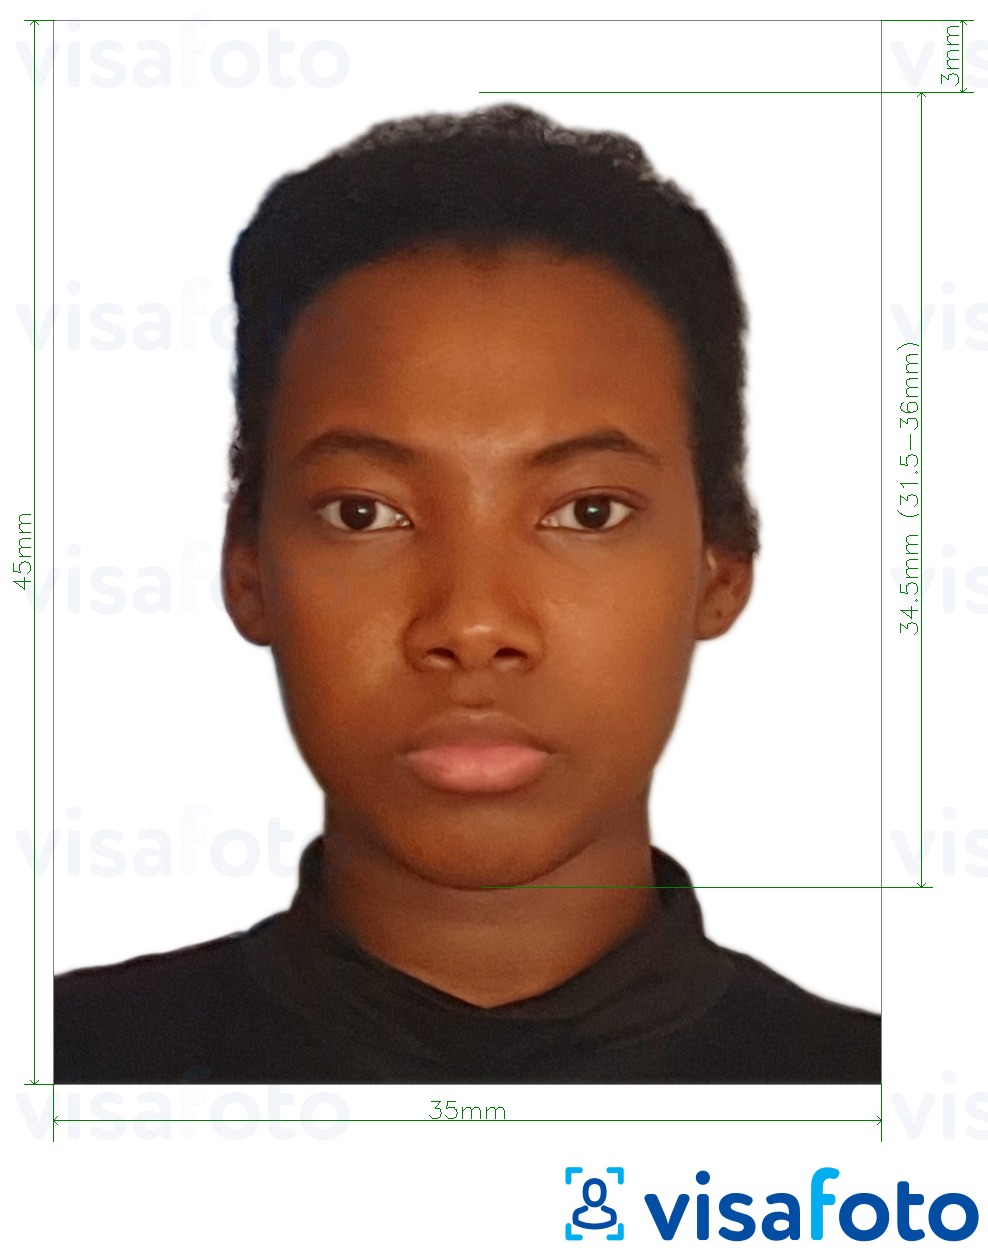 Voorbeeld van foto voor Burkina Faso visum 4,5x3,5 cm (45x35 mm) met exacte maatspecificatie